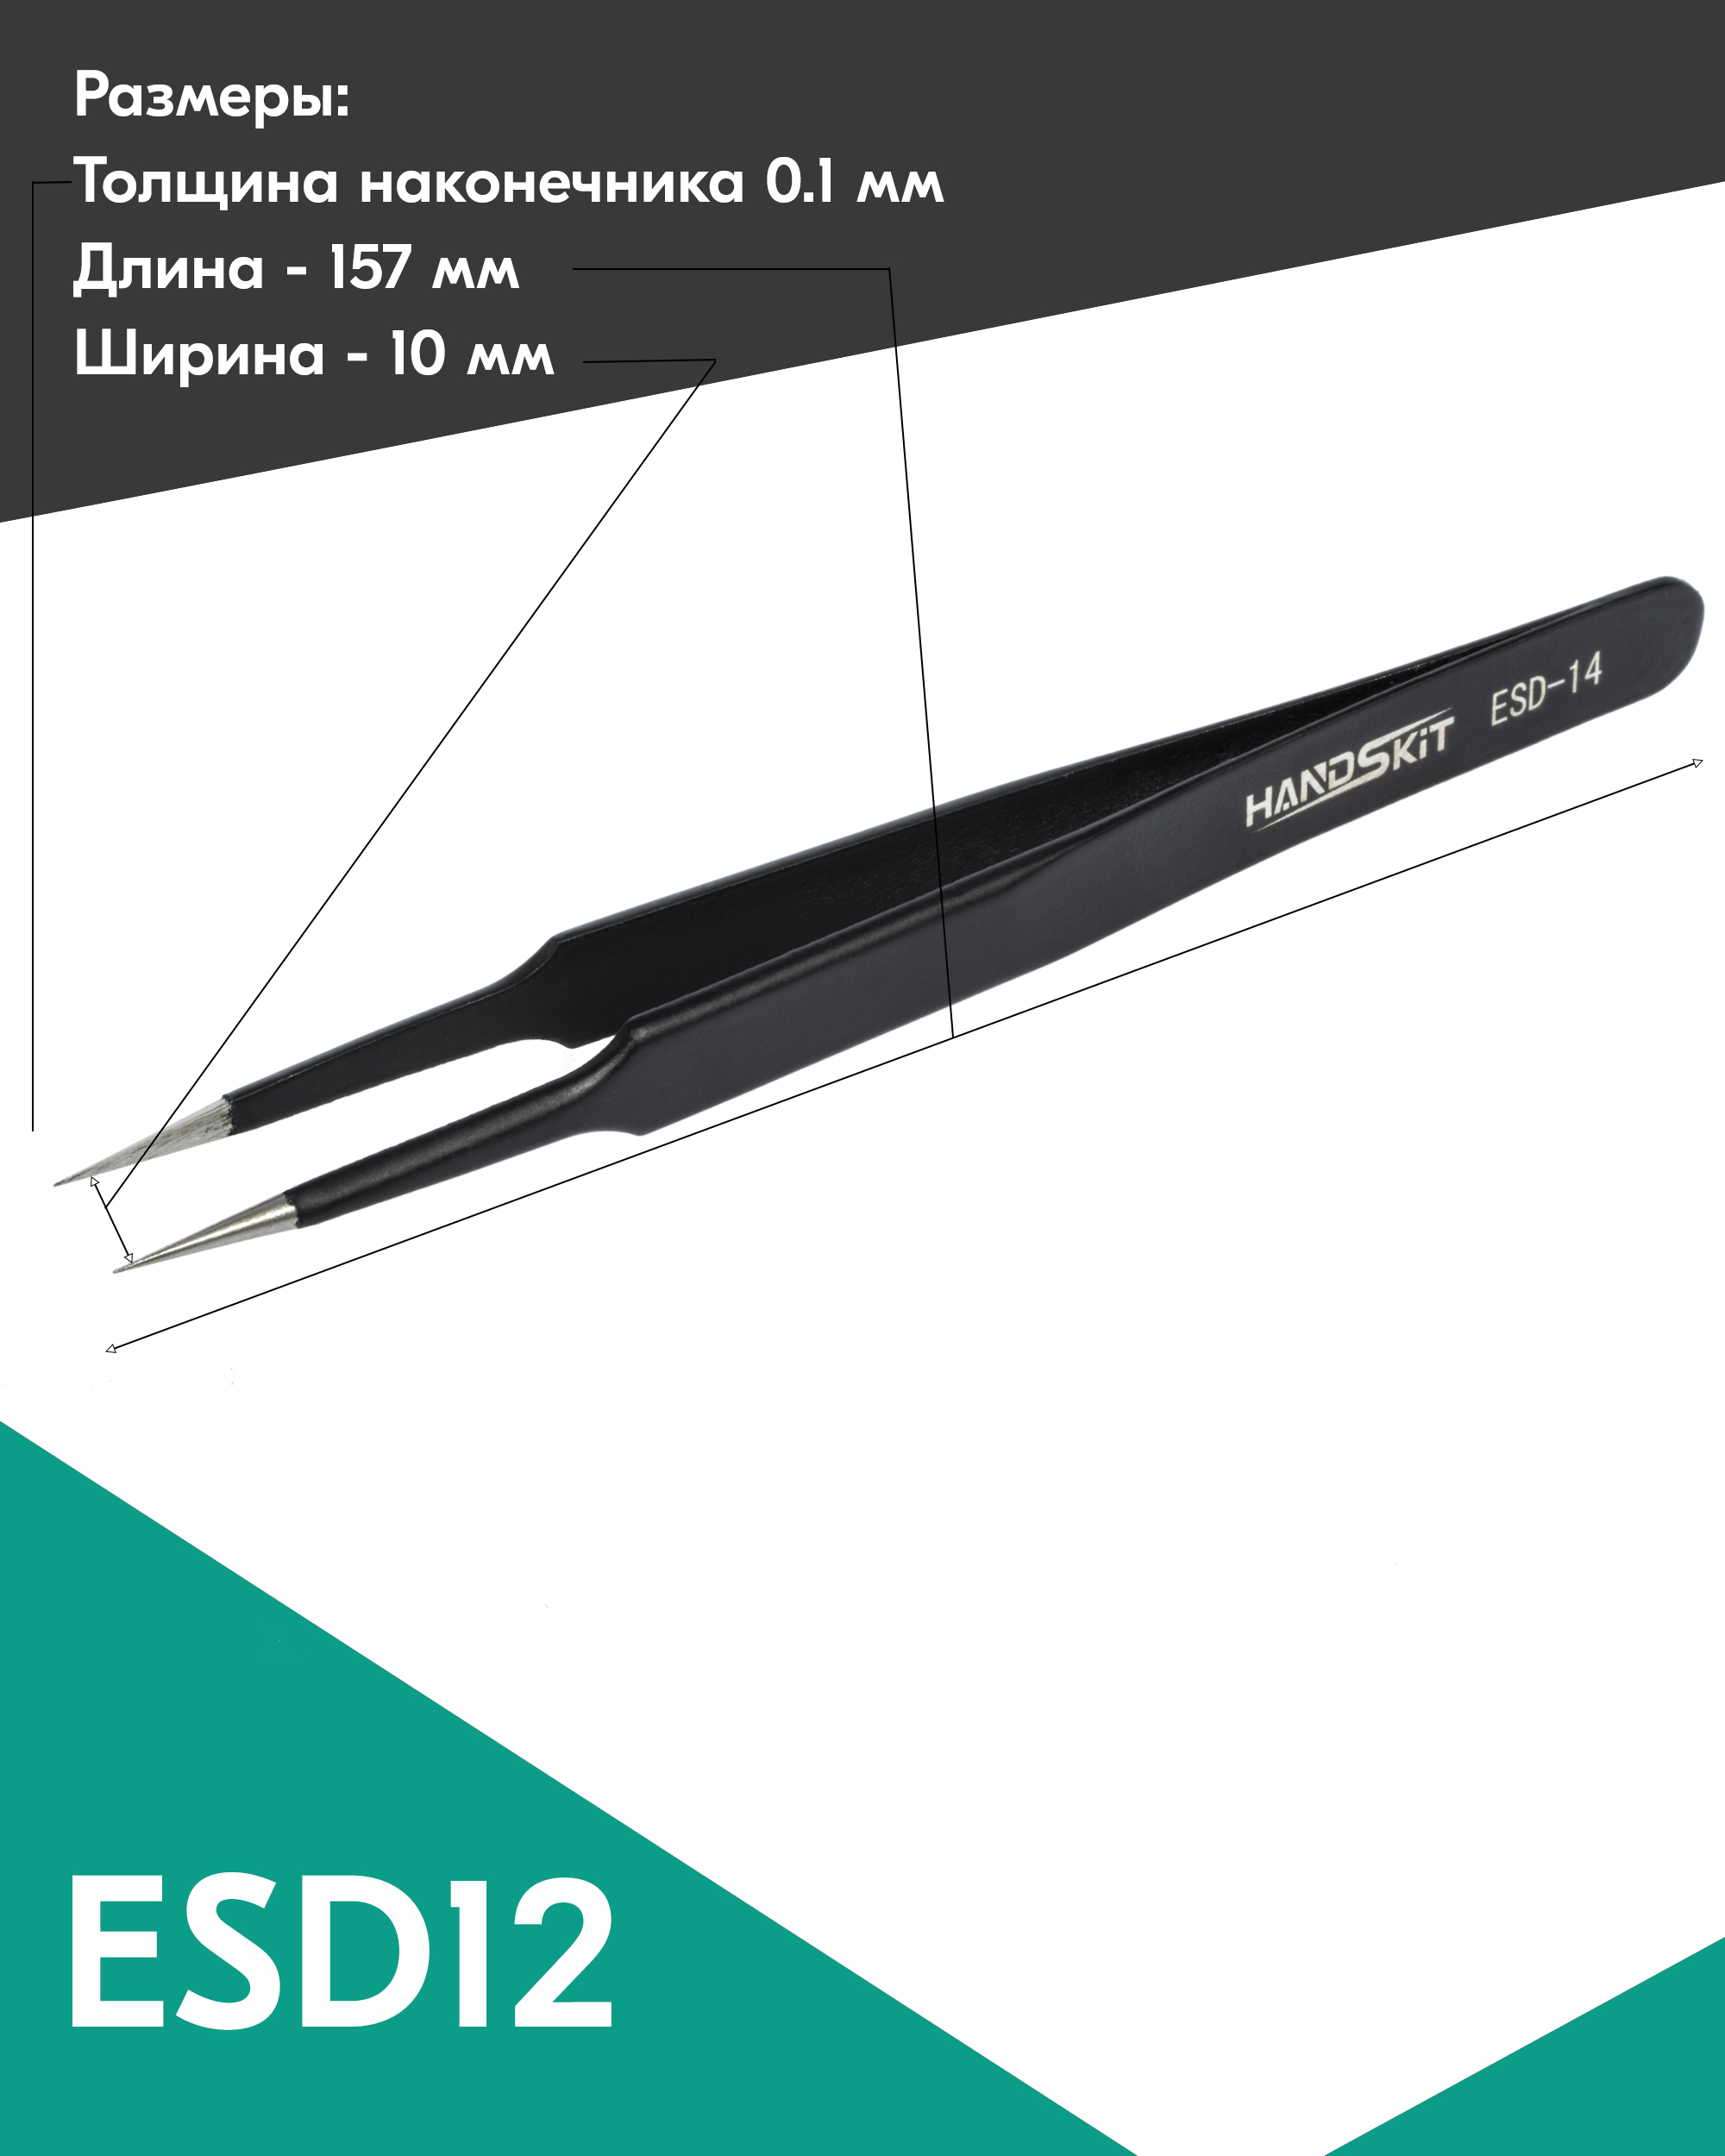 Пинцет диэлектрический HANDSKIT ESD14 (120 мм) пинцет прямой узкий 9 см серебристый